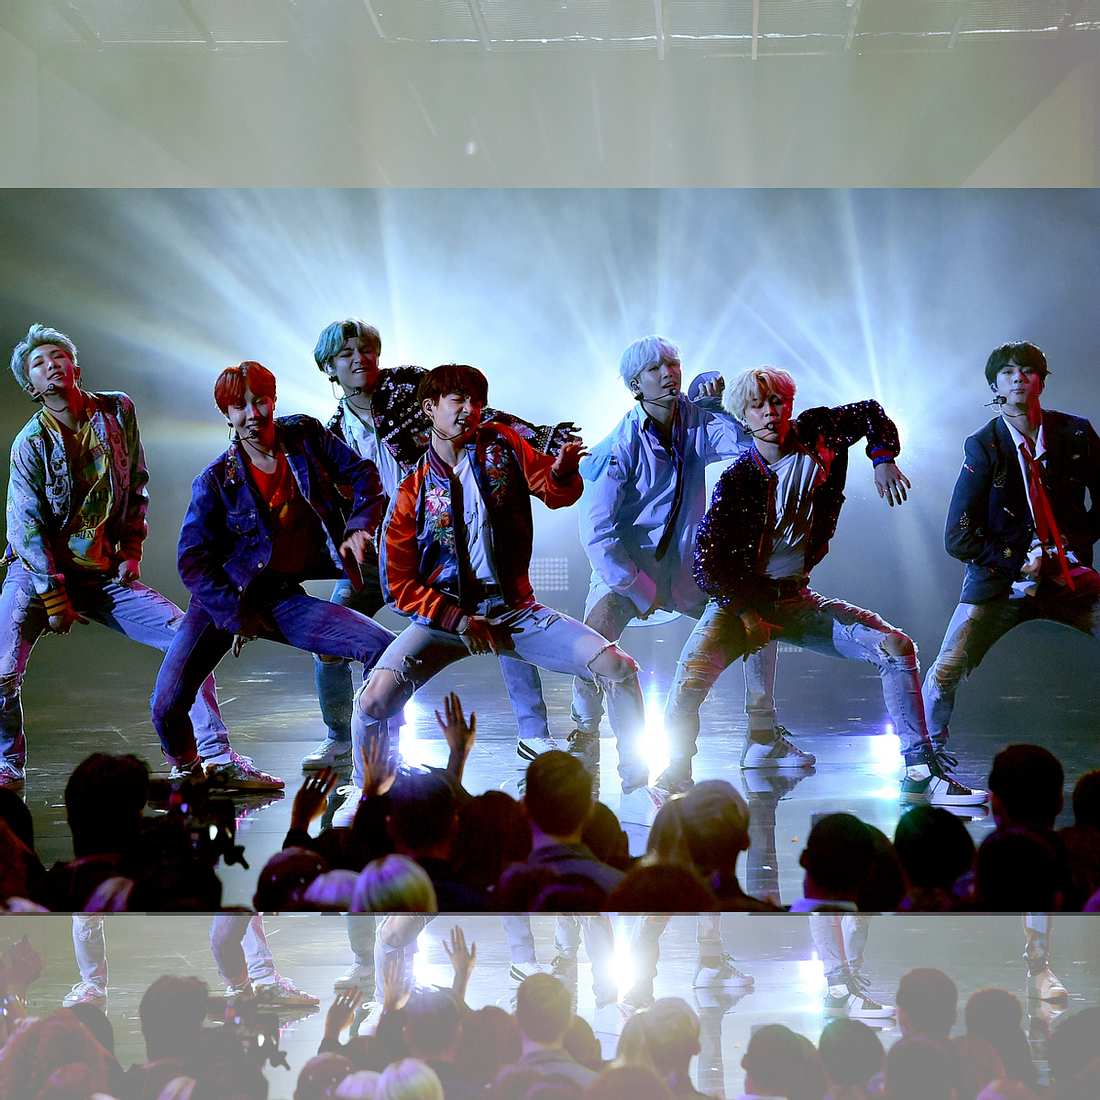 BTS: Erste K-Pop-Band, die auf einer US-Preisverleihung aufgetreten ist